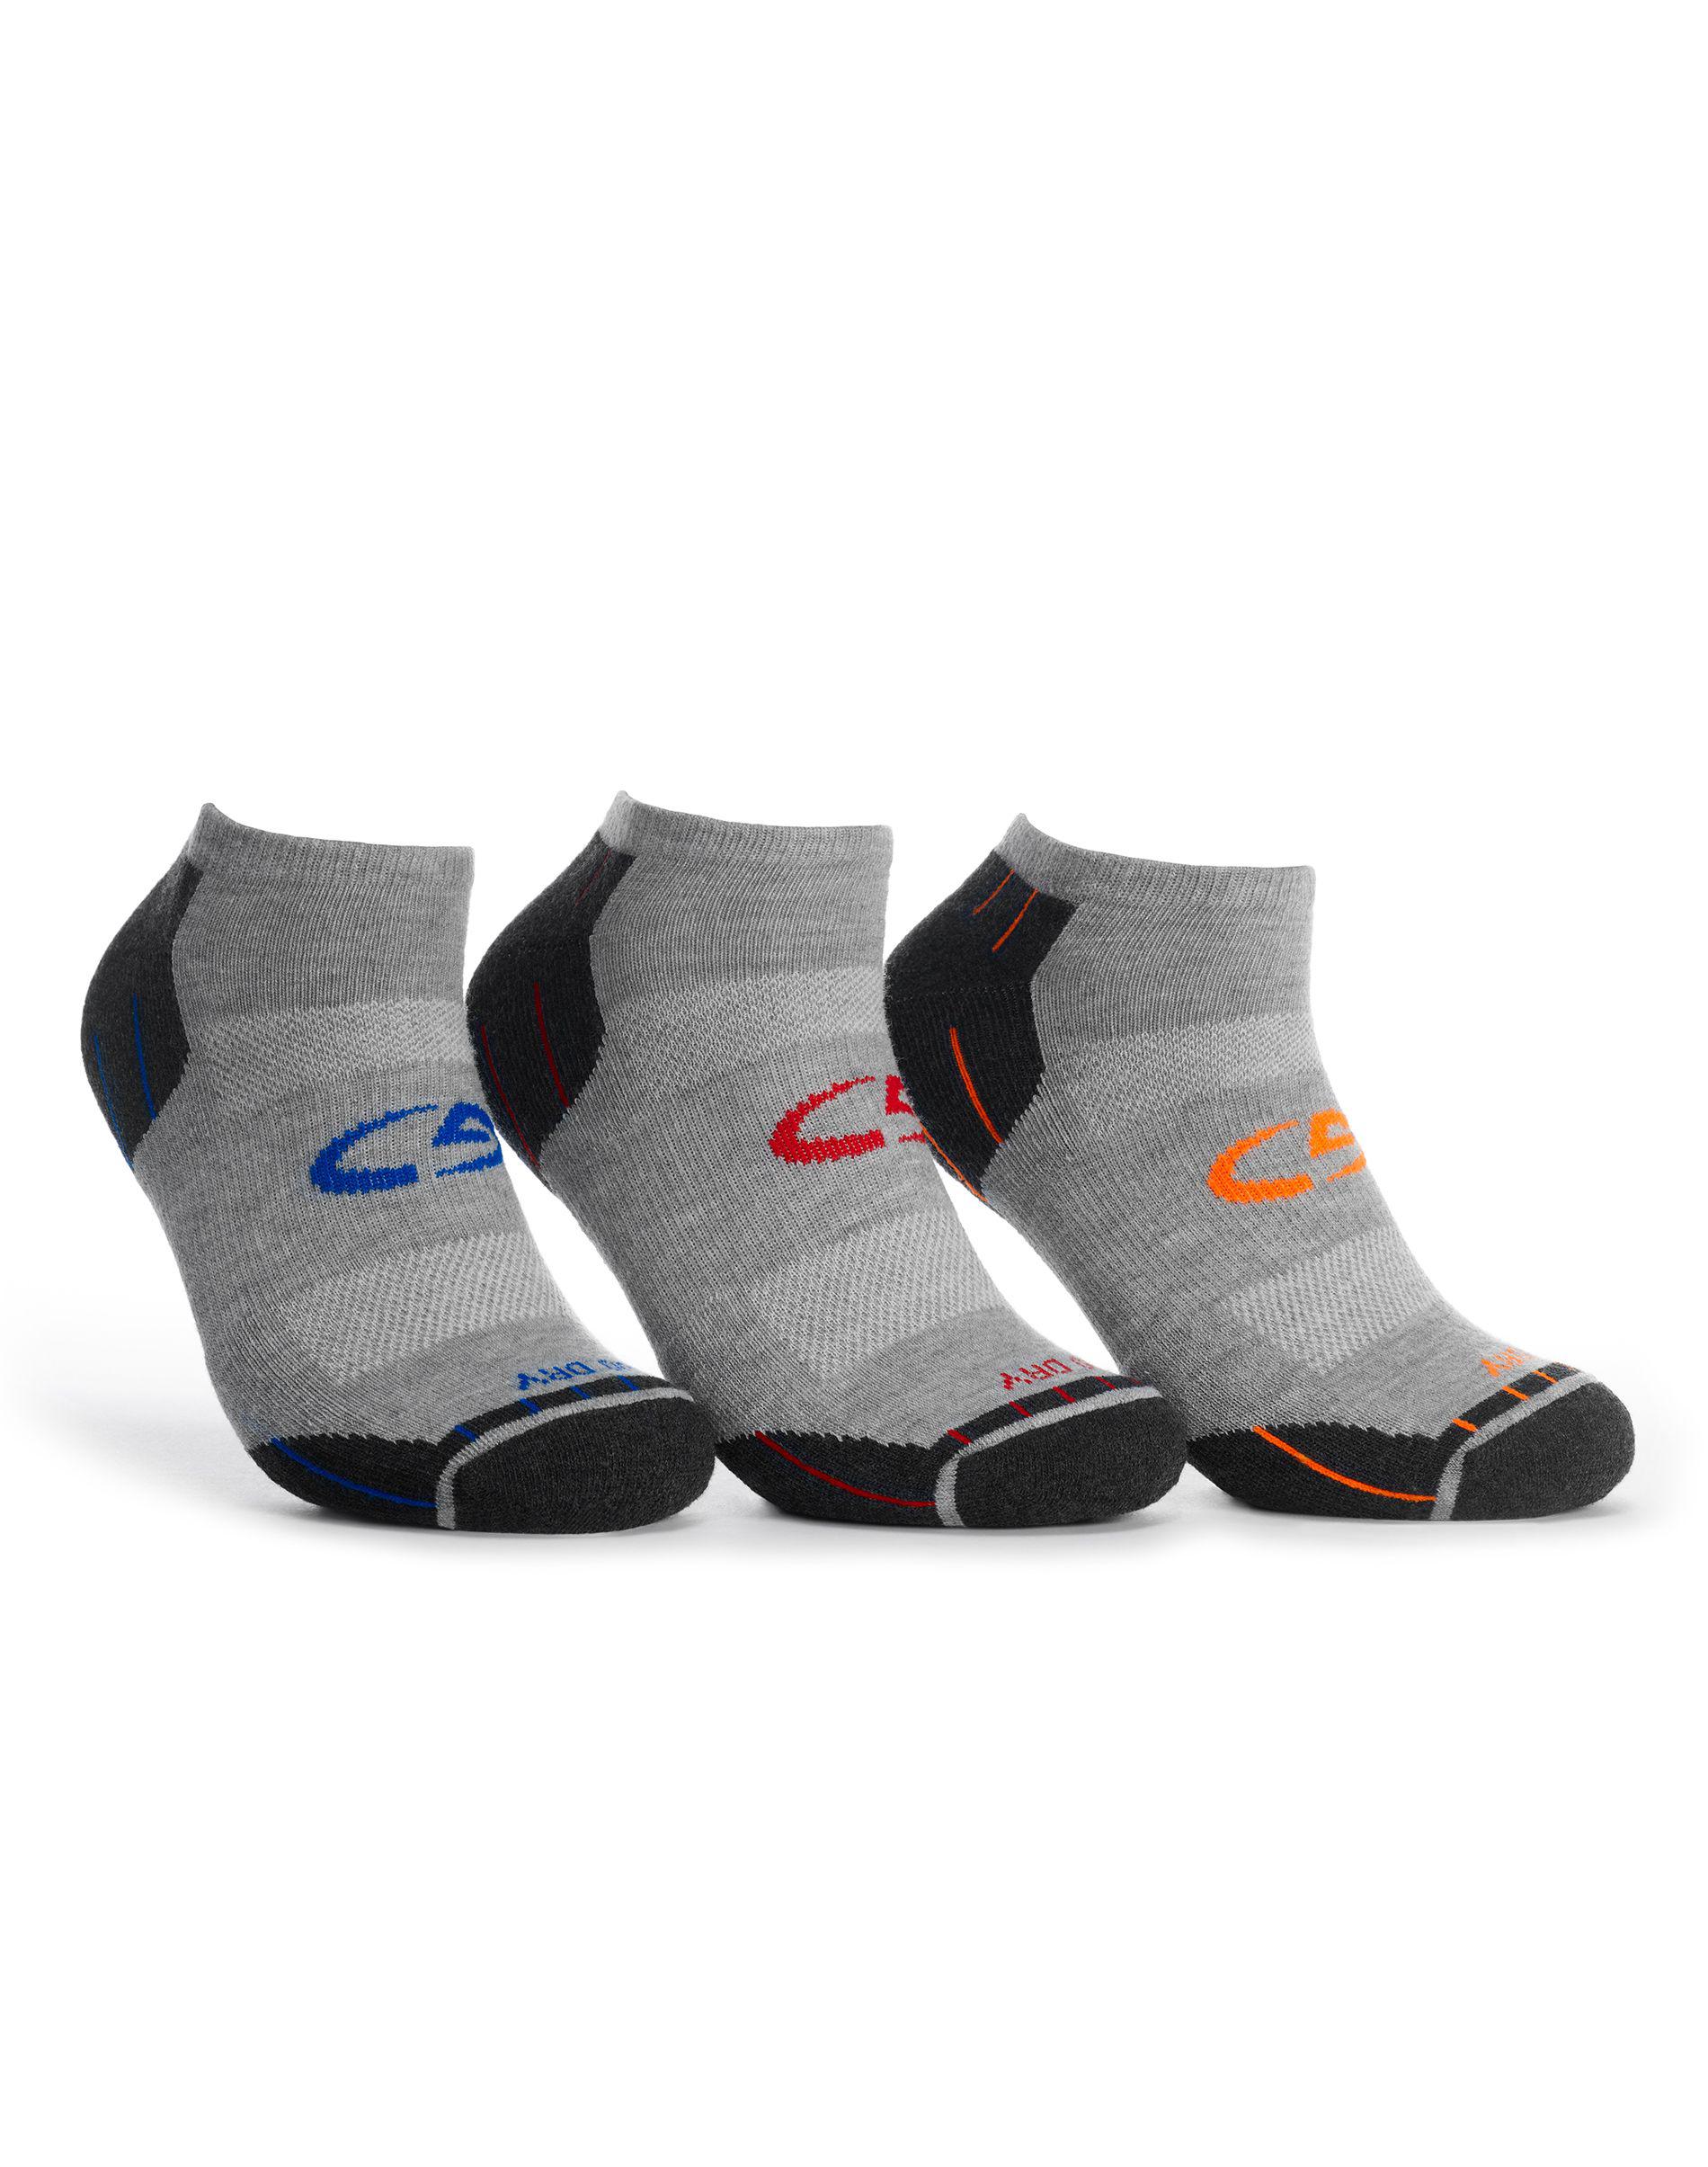 c9 duo dry socks